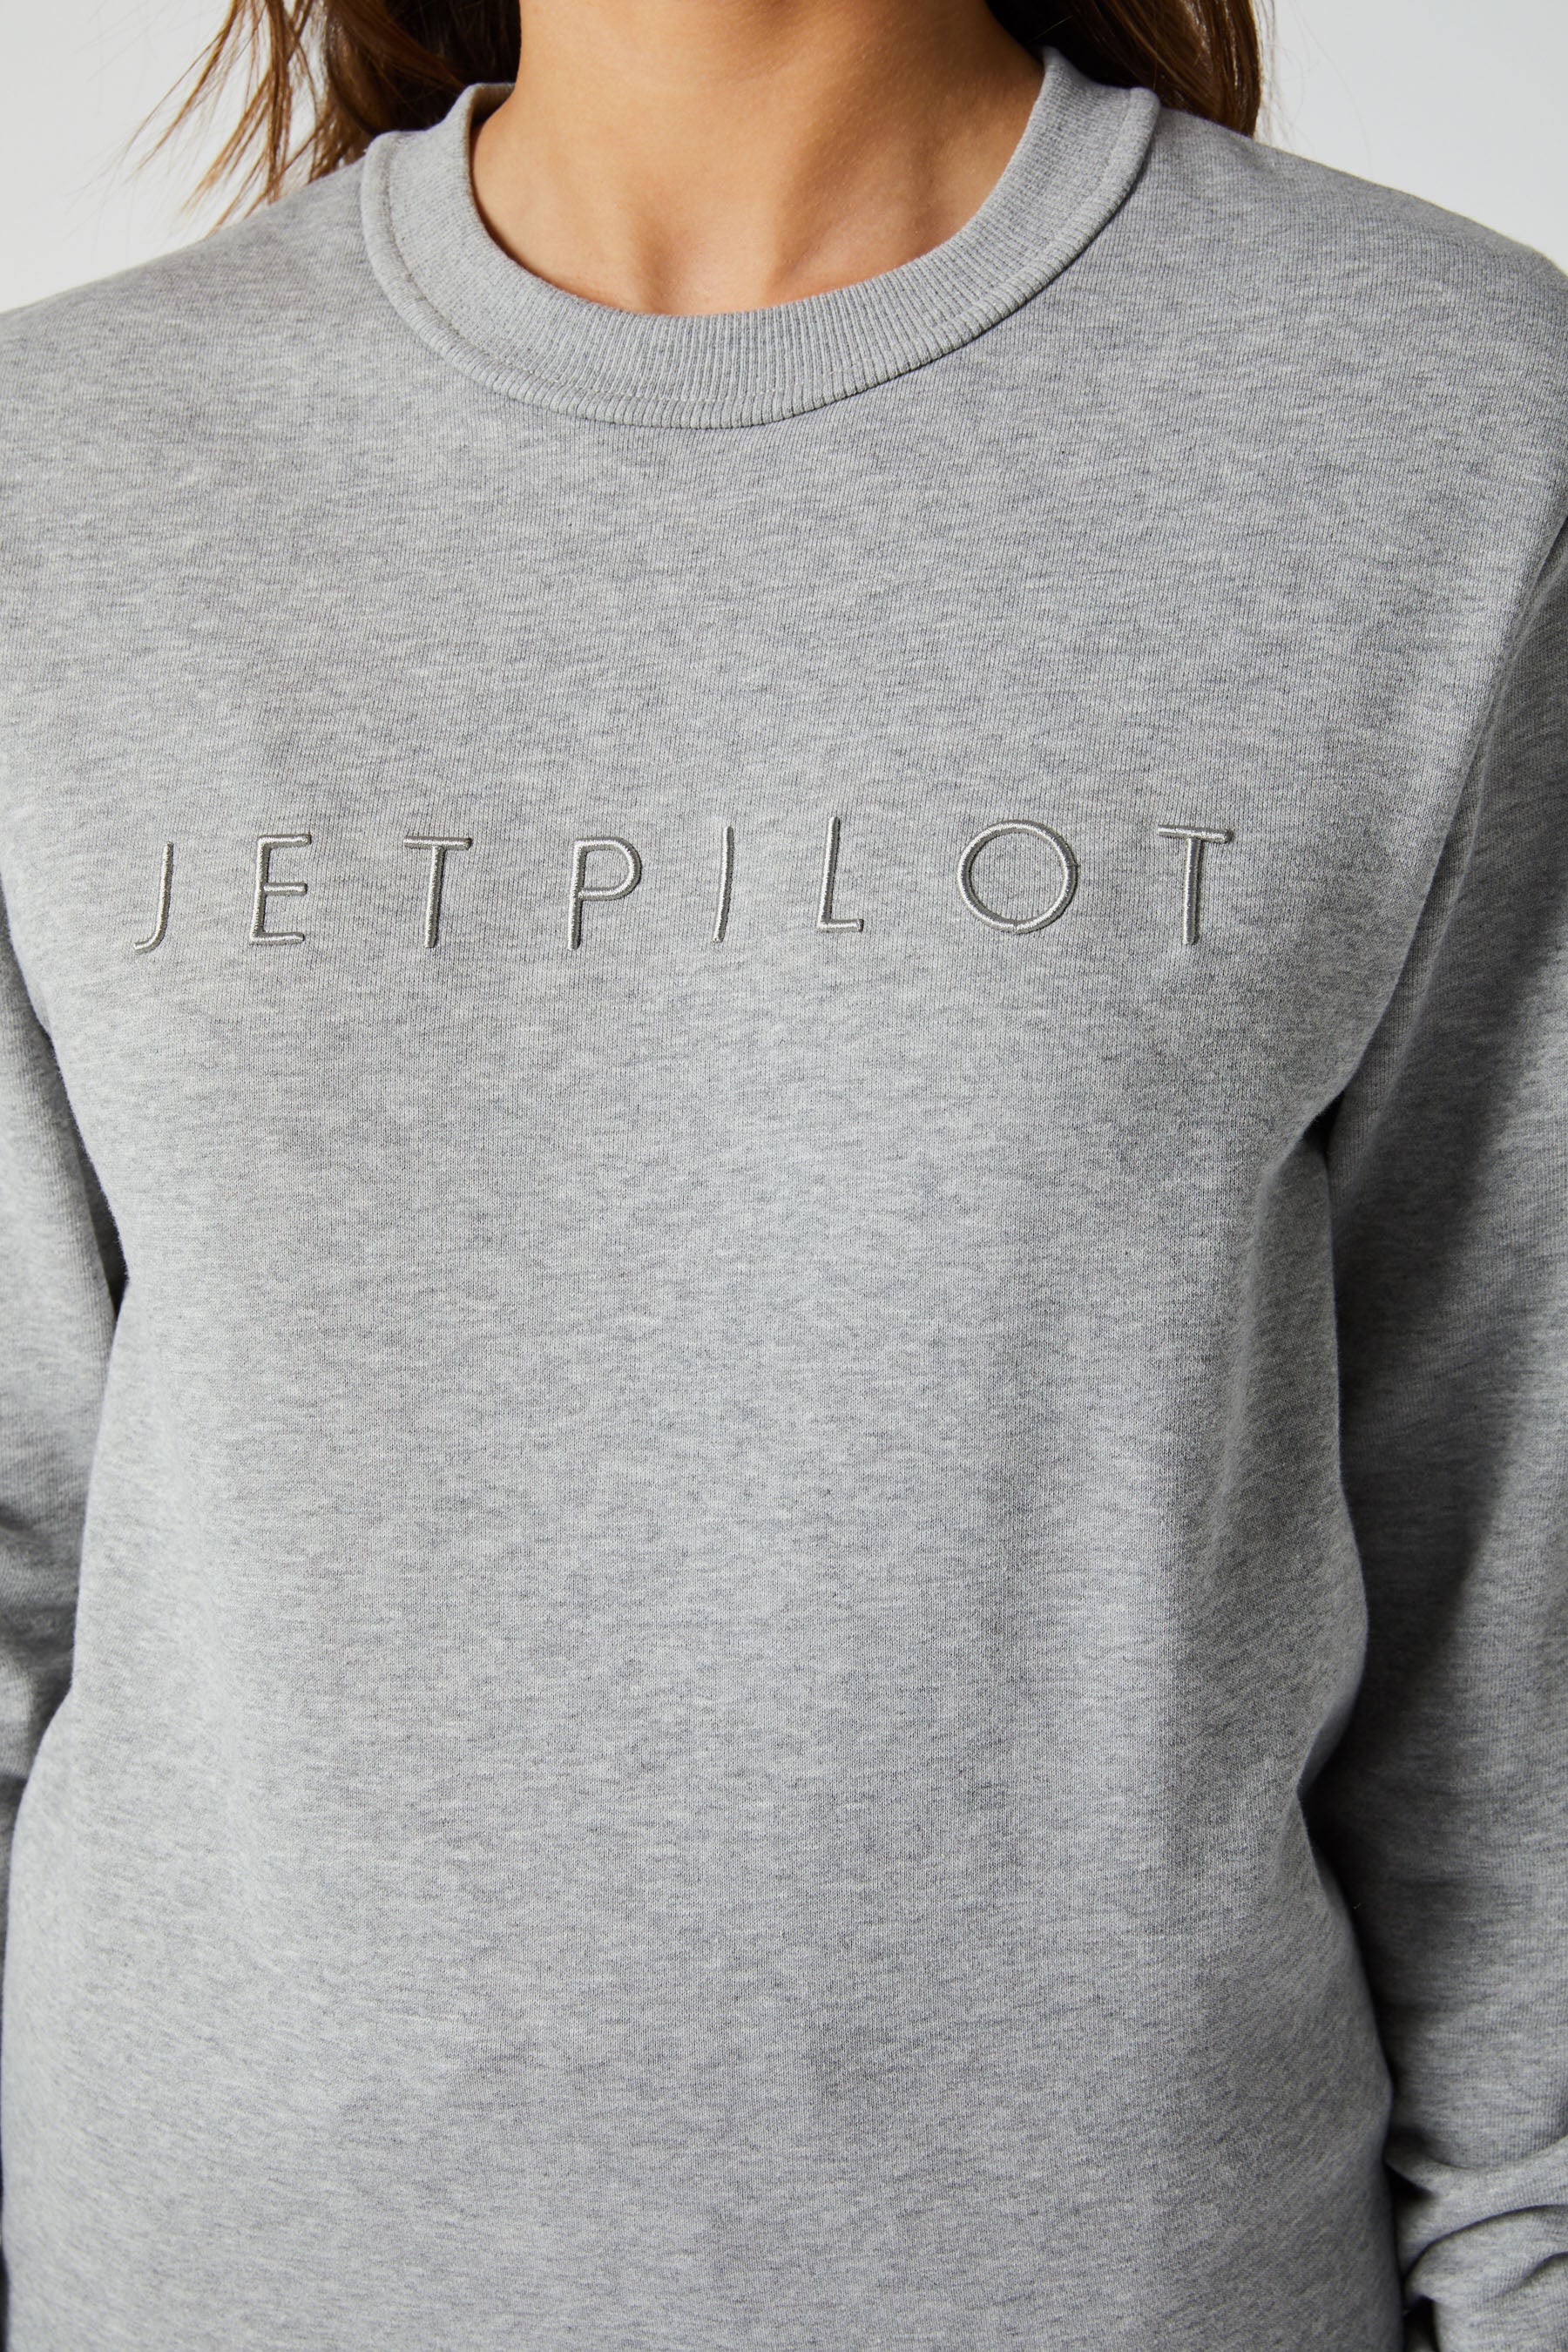 Jetpilot Simple Ladies Crew - Grey/Marle